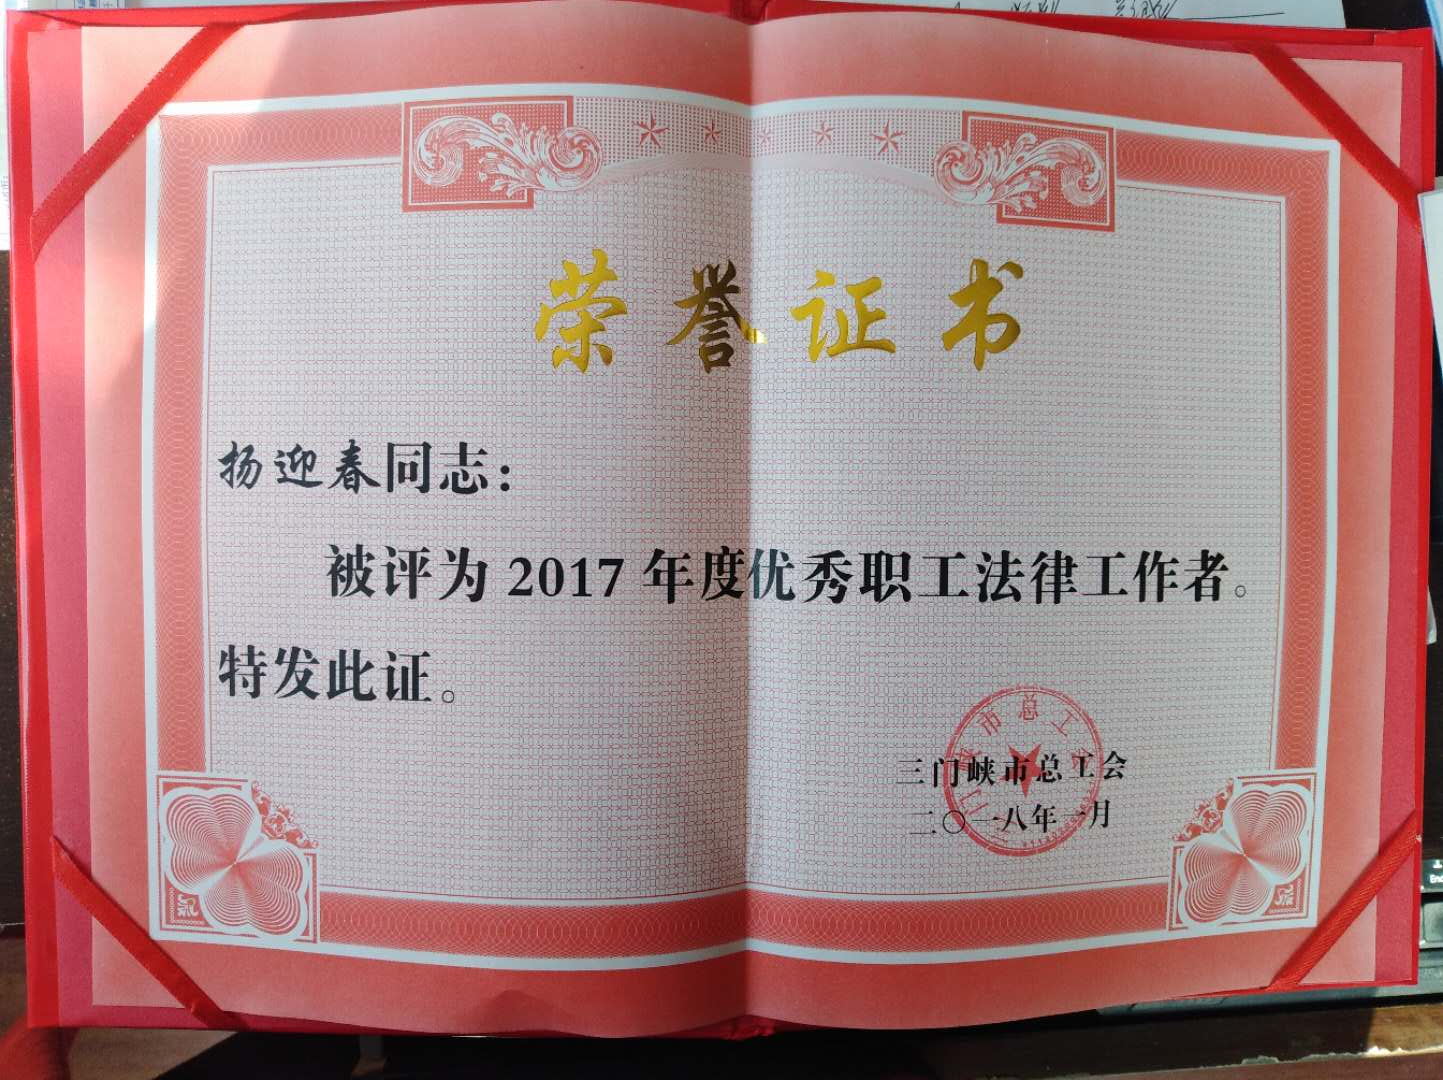 祝贺我所律师杨迎春被三门峡市总工会评为“2017年度优秀职工法律工作者”